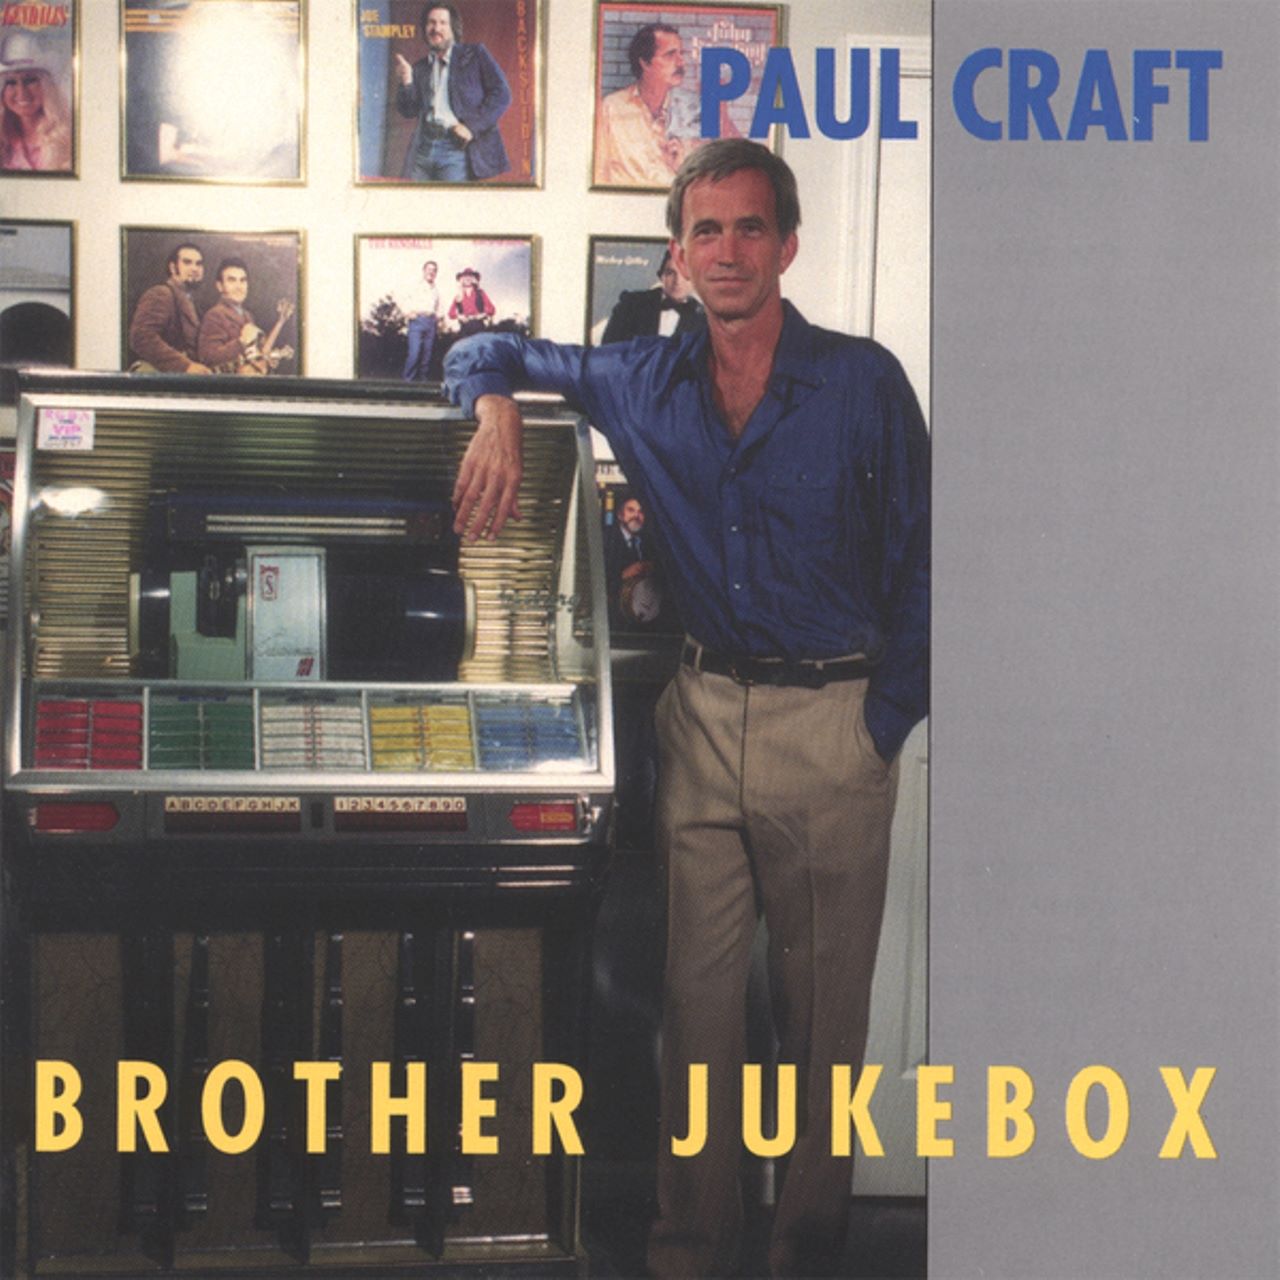 Paul Craft - Brother Jukebox cover album